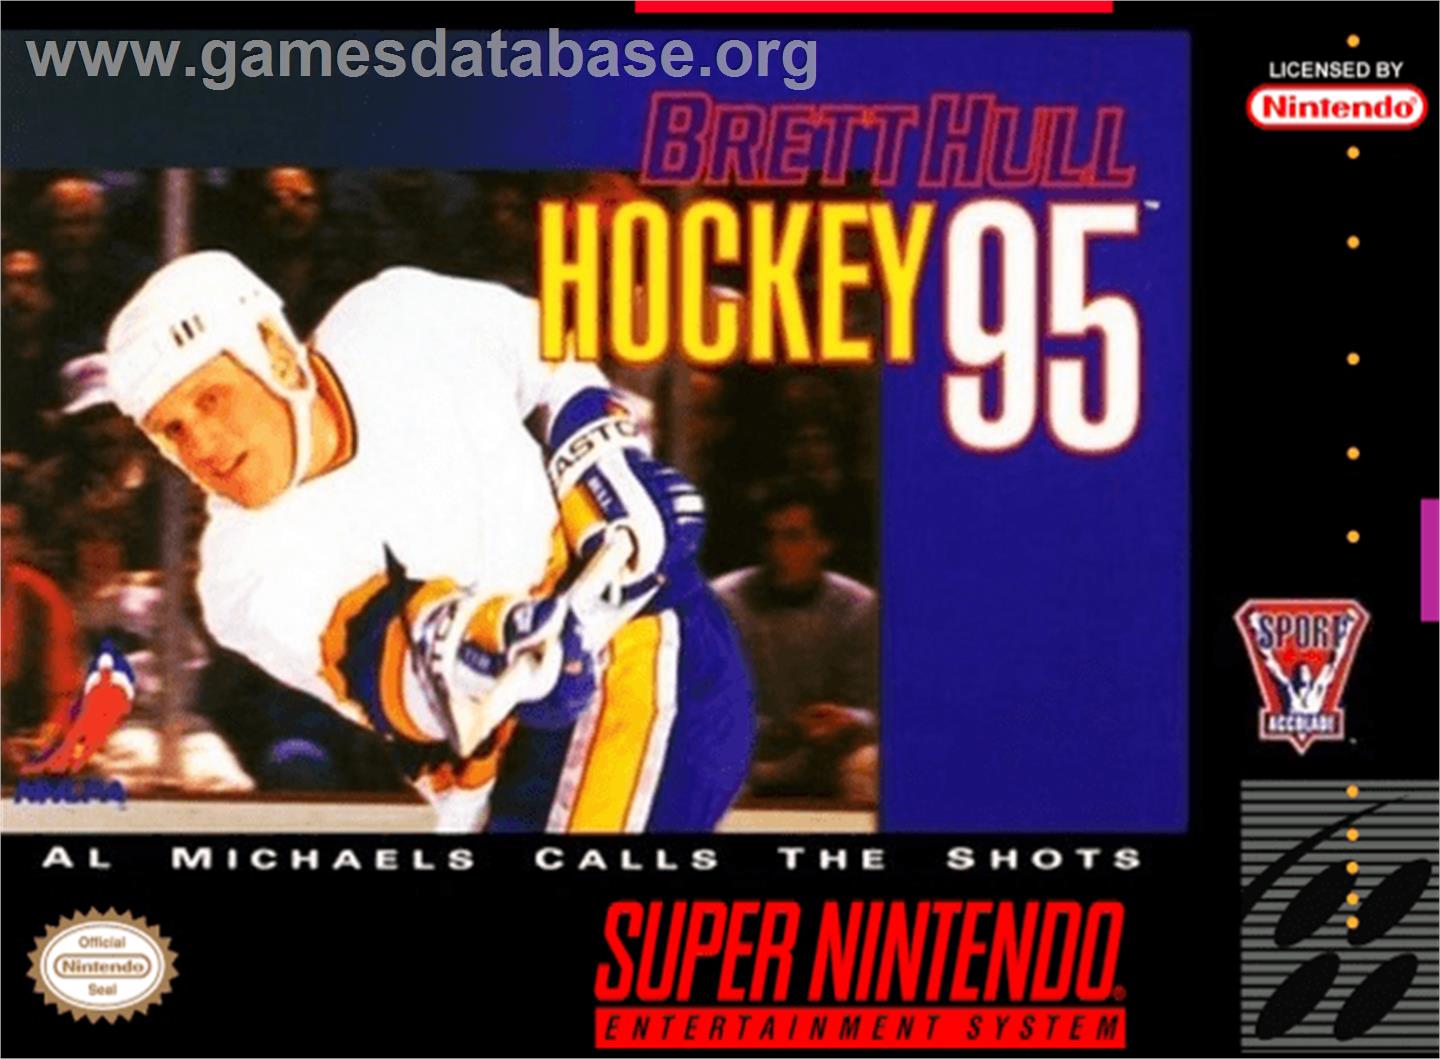 Brett Hull Hockey 95 - Nintendo SNES - Artwork - Box